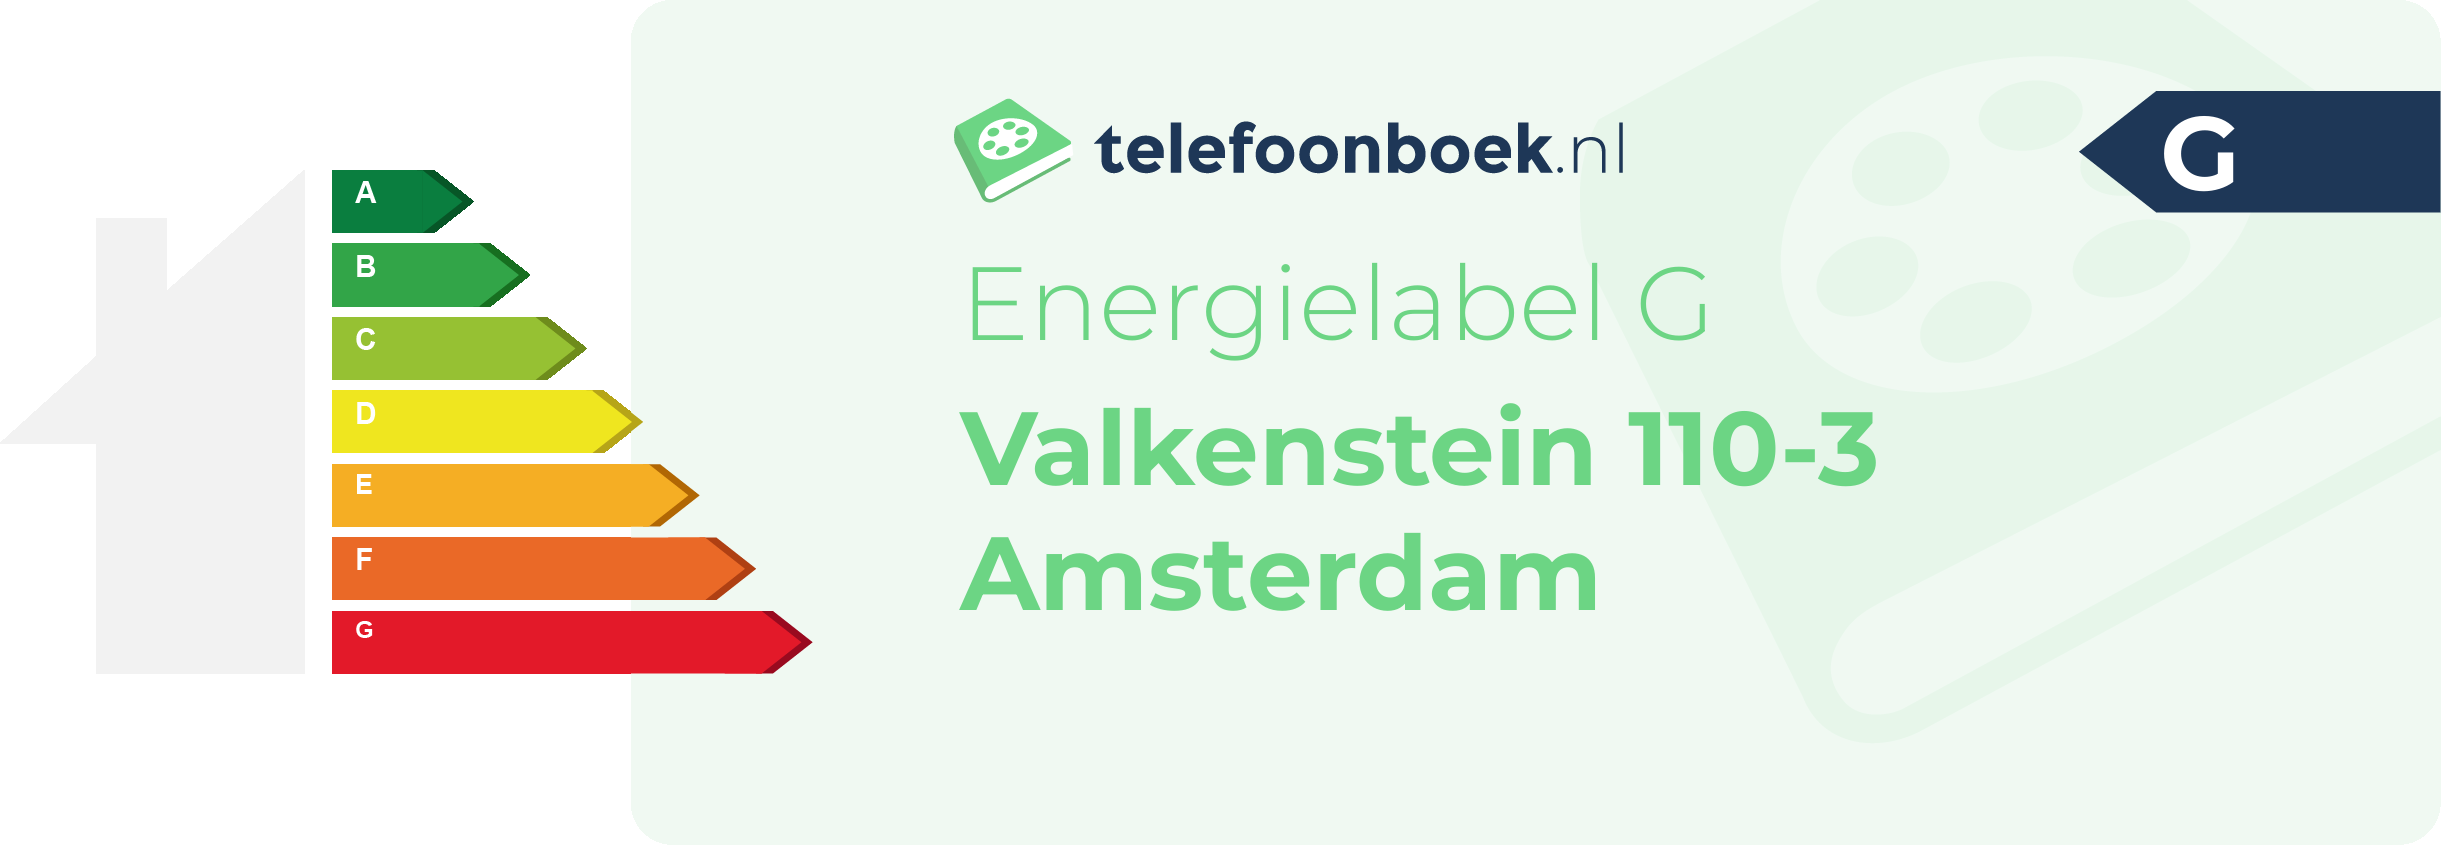 Energielabel Valkenstein 110-3 Amsterdam